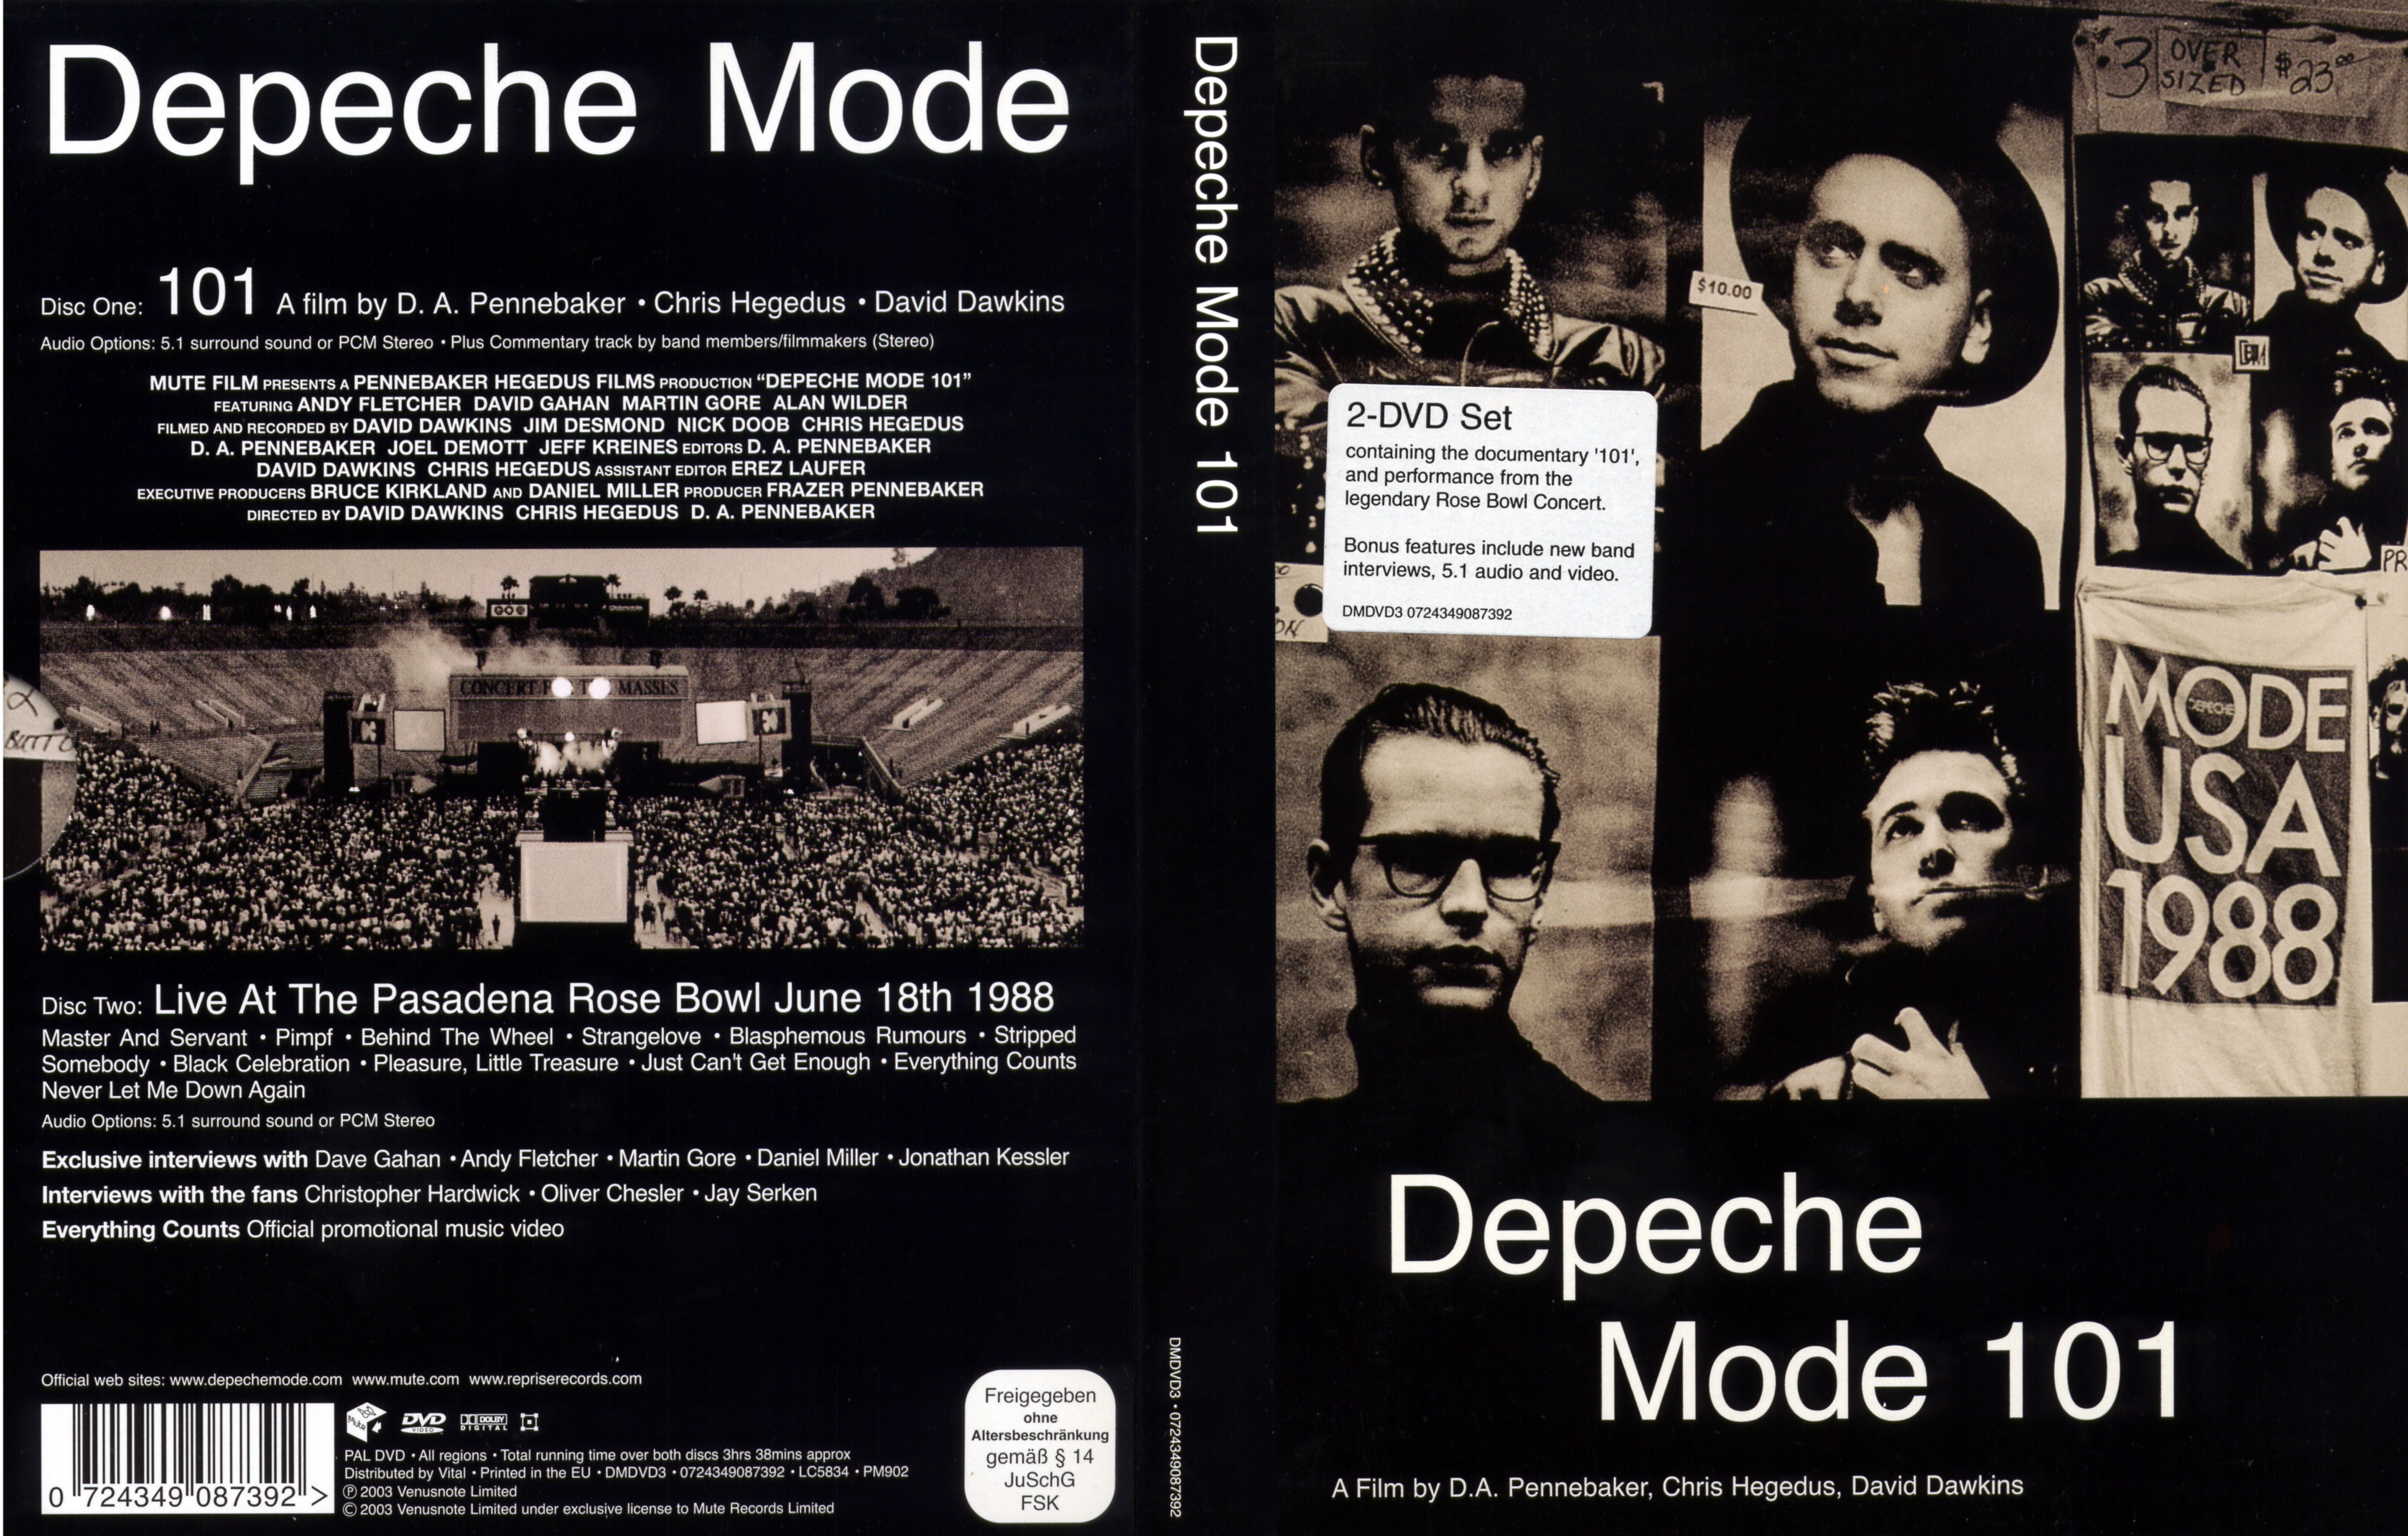 Jaquette DVD Depeche mode 101